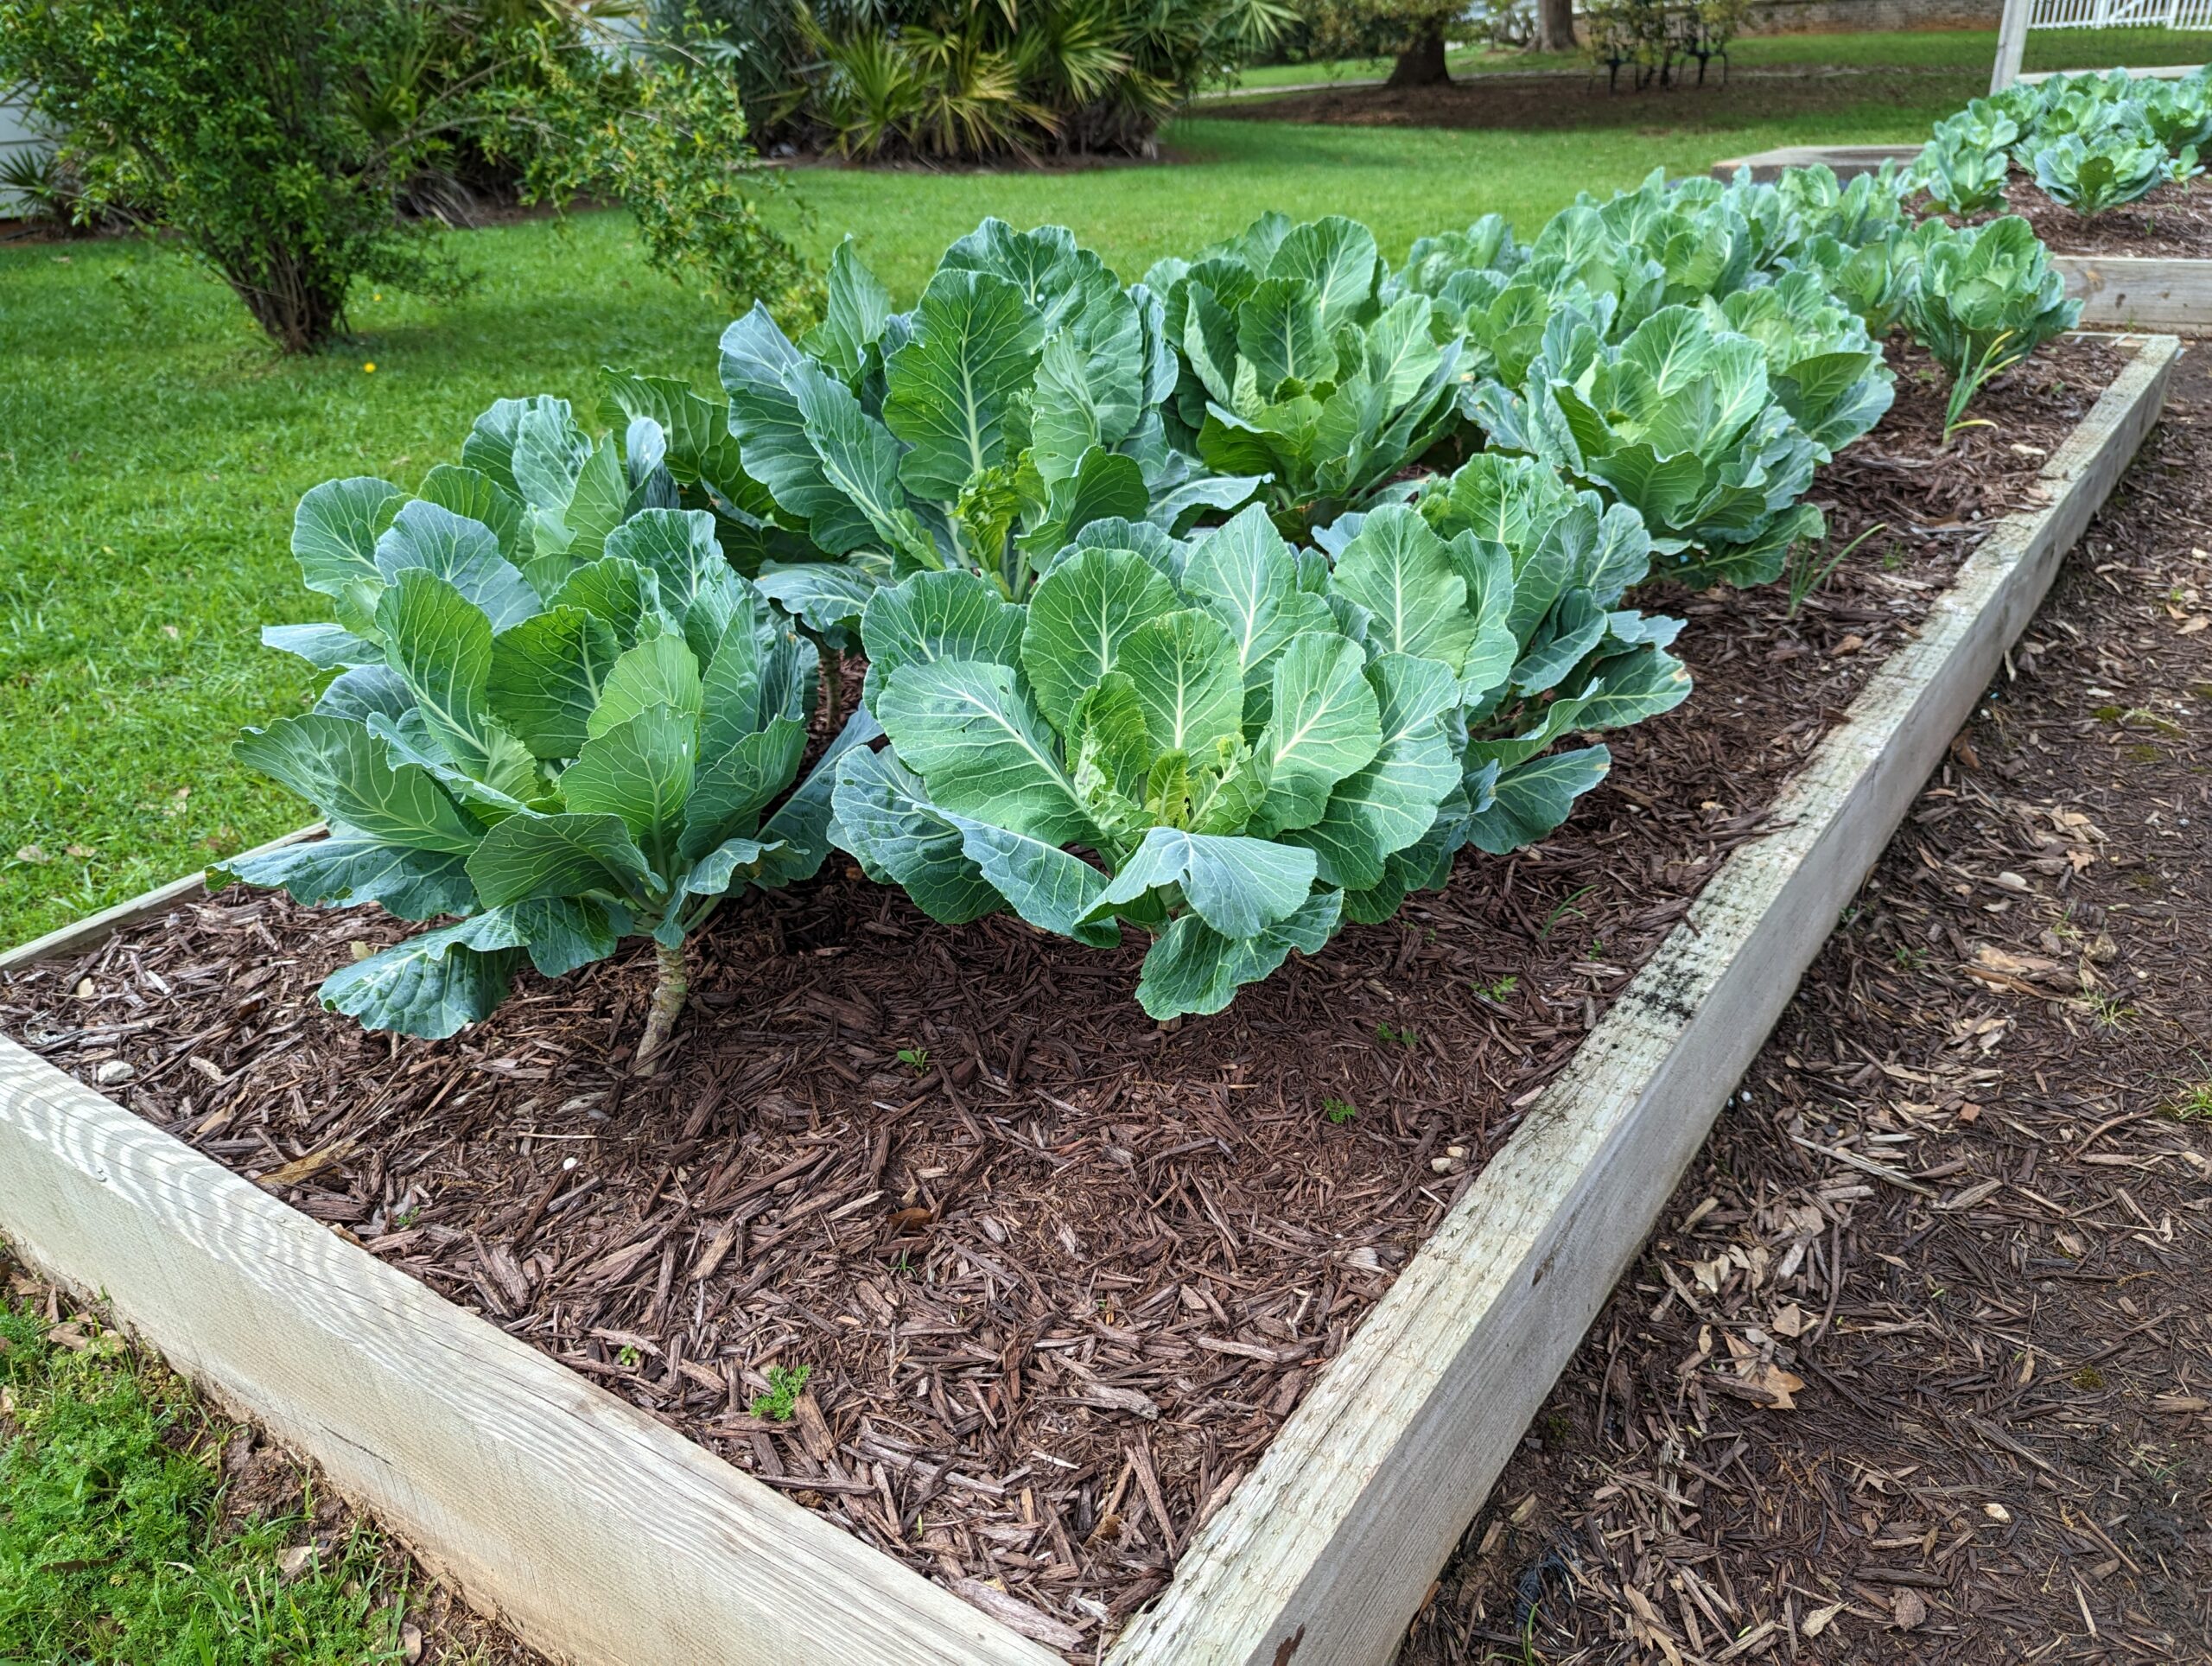 Lettuce Grows in the Community Garden